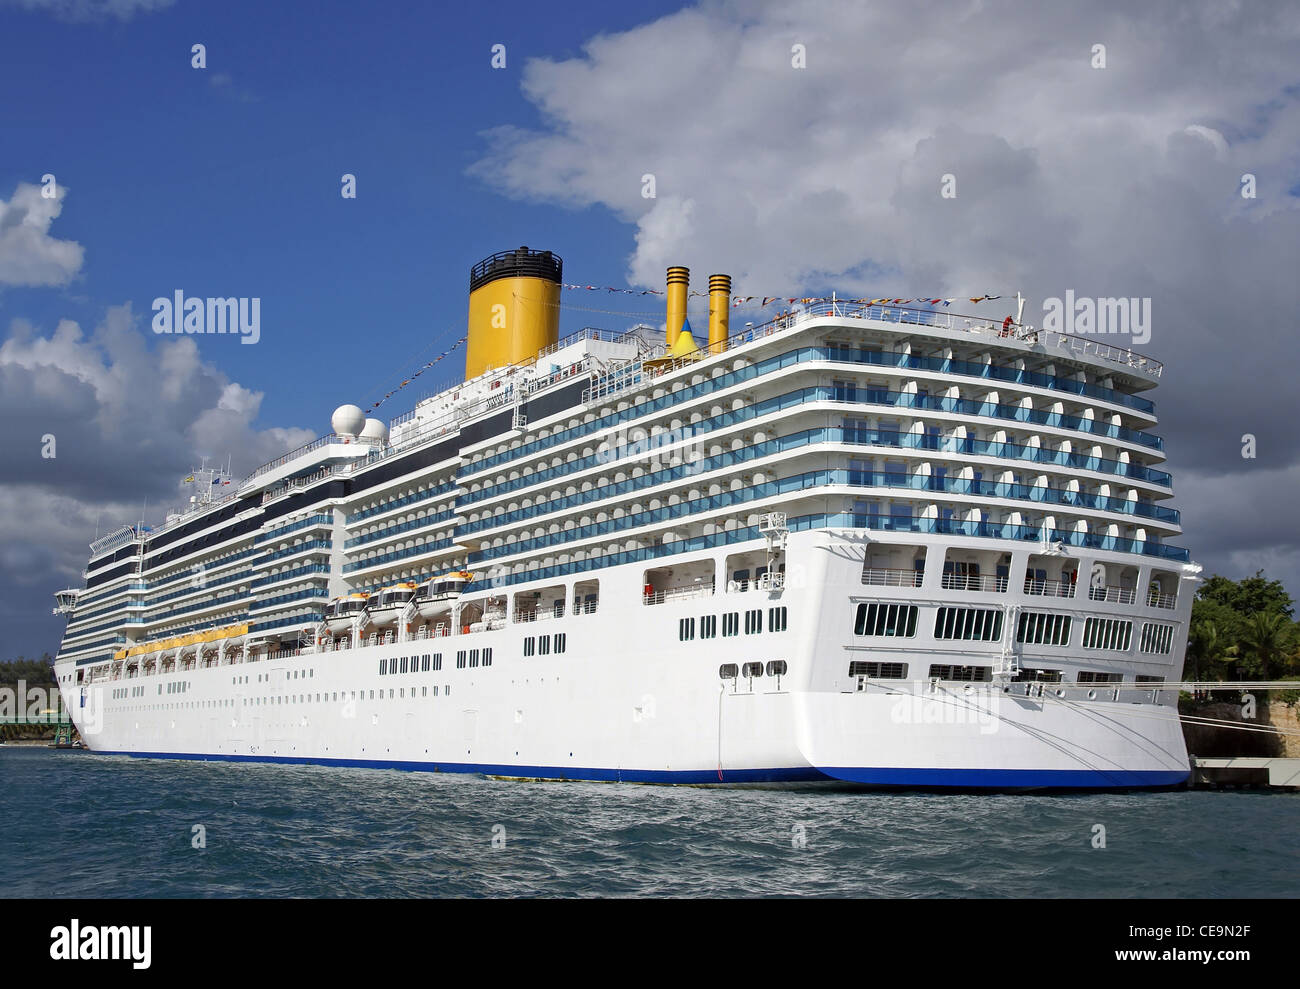 A cruise ship Stock Photo